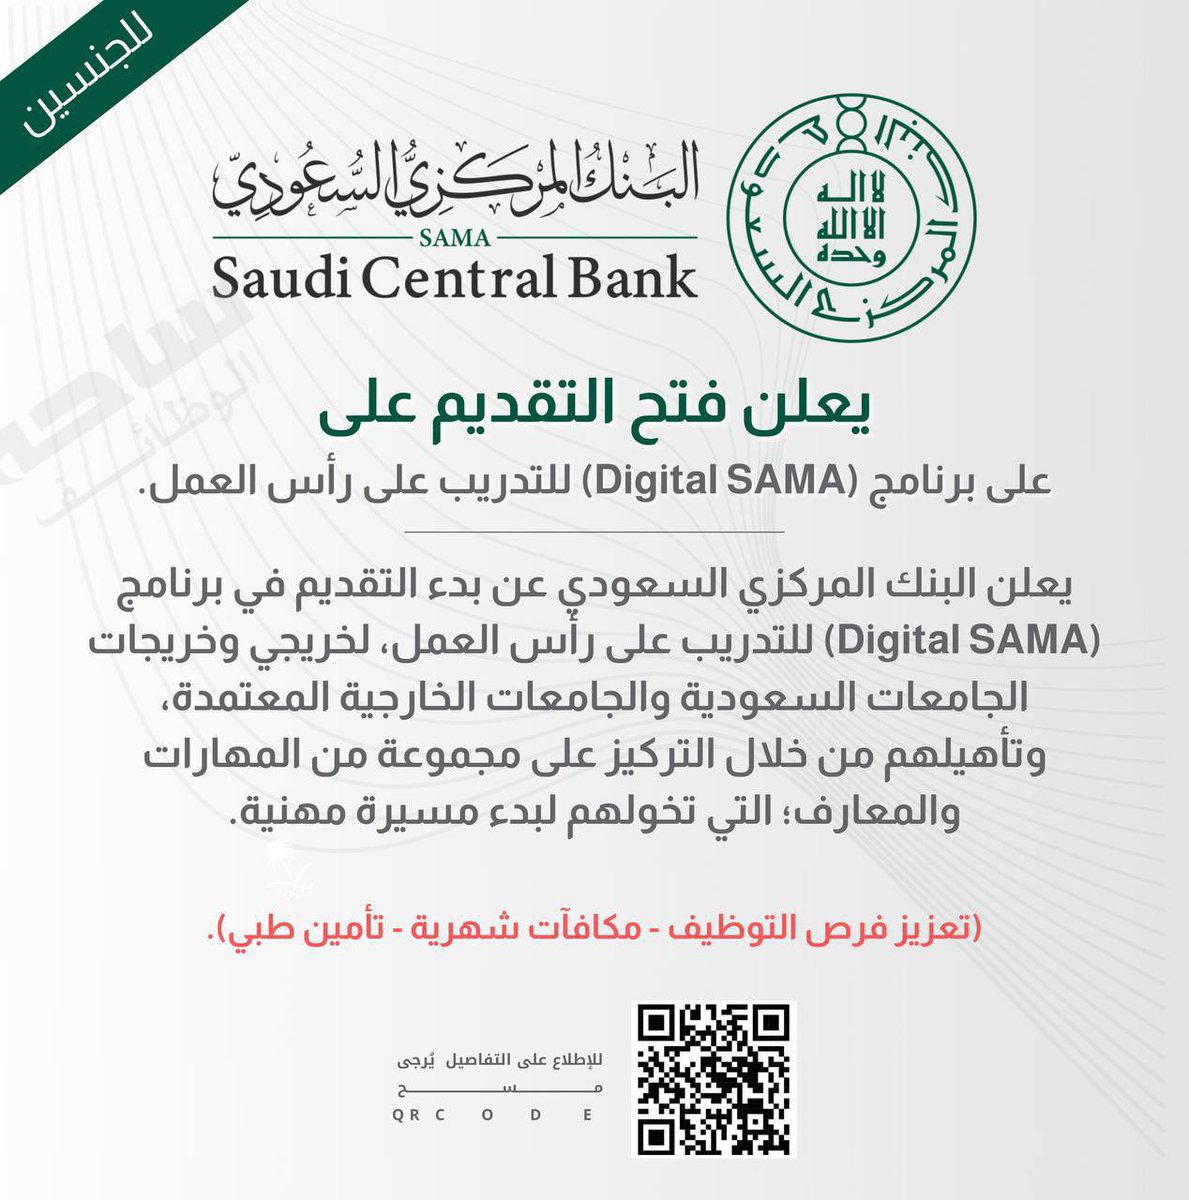 (⭐️🔵) هام:
غداً أخر فرصة..

البنك المركزي السعودي (ساما) يعلن بدء التقديم (رجال / نساء) على برنامج (Digital SAMA) للتدريب على رأس العمل.

⭐️ (تعزيز فرص التوظيف - مكافآت شهرية - تأمين طبي).

↩️ للتقديم  : (linkedksa.com/7345/)